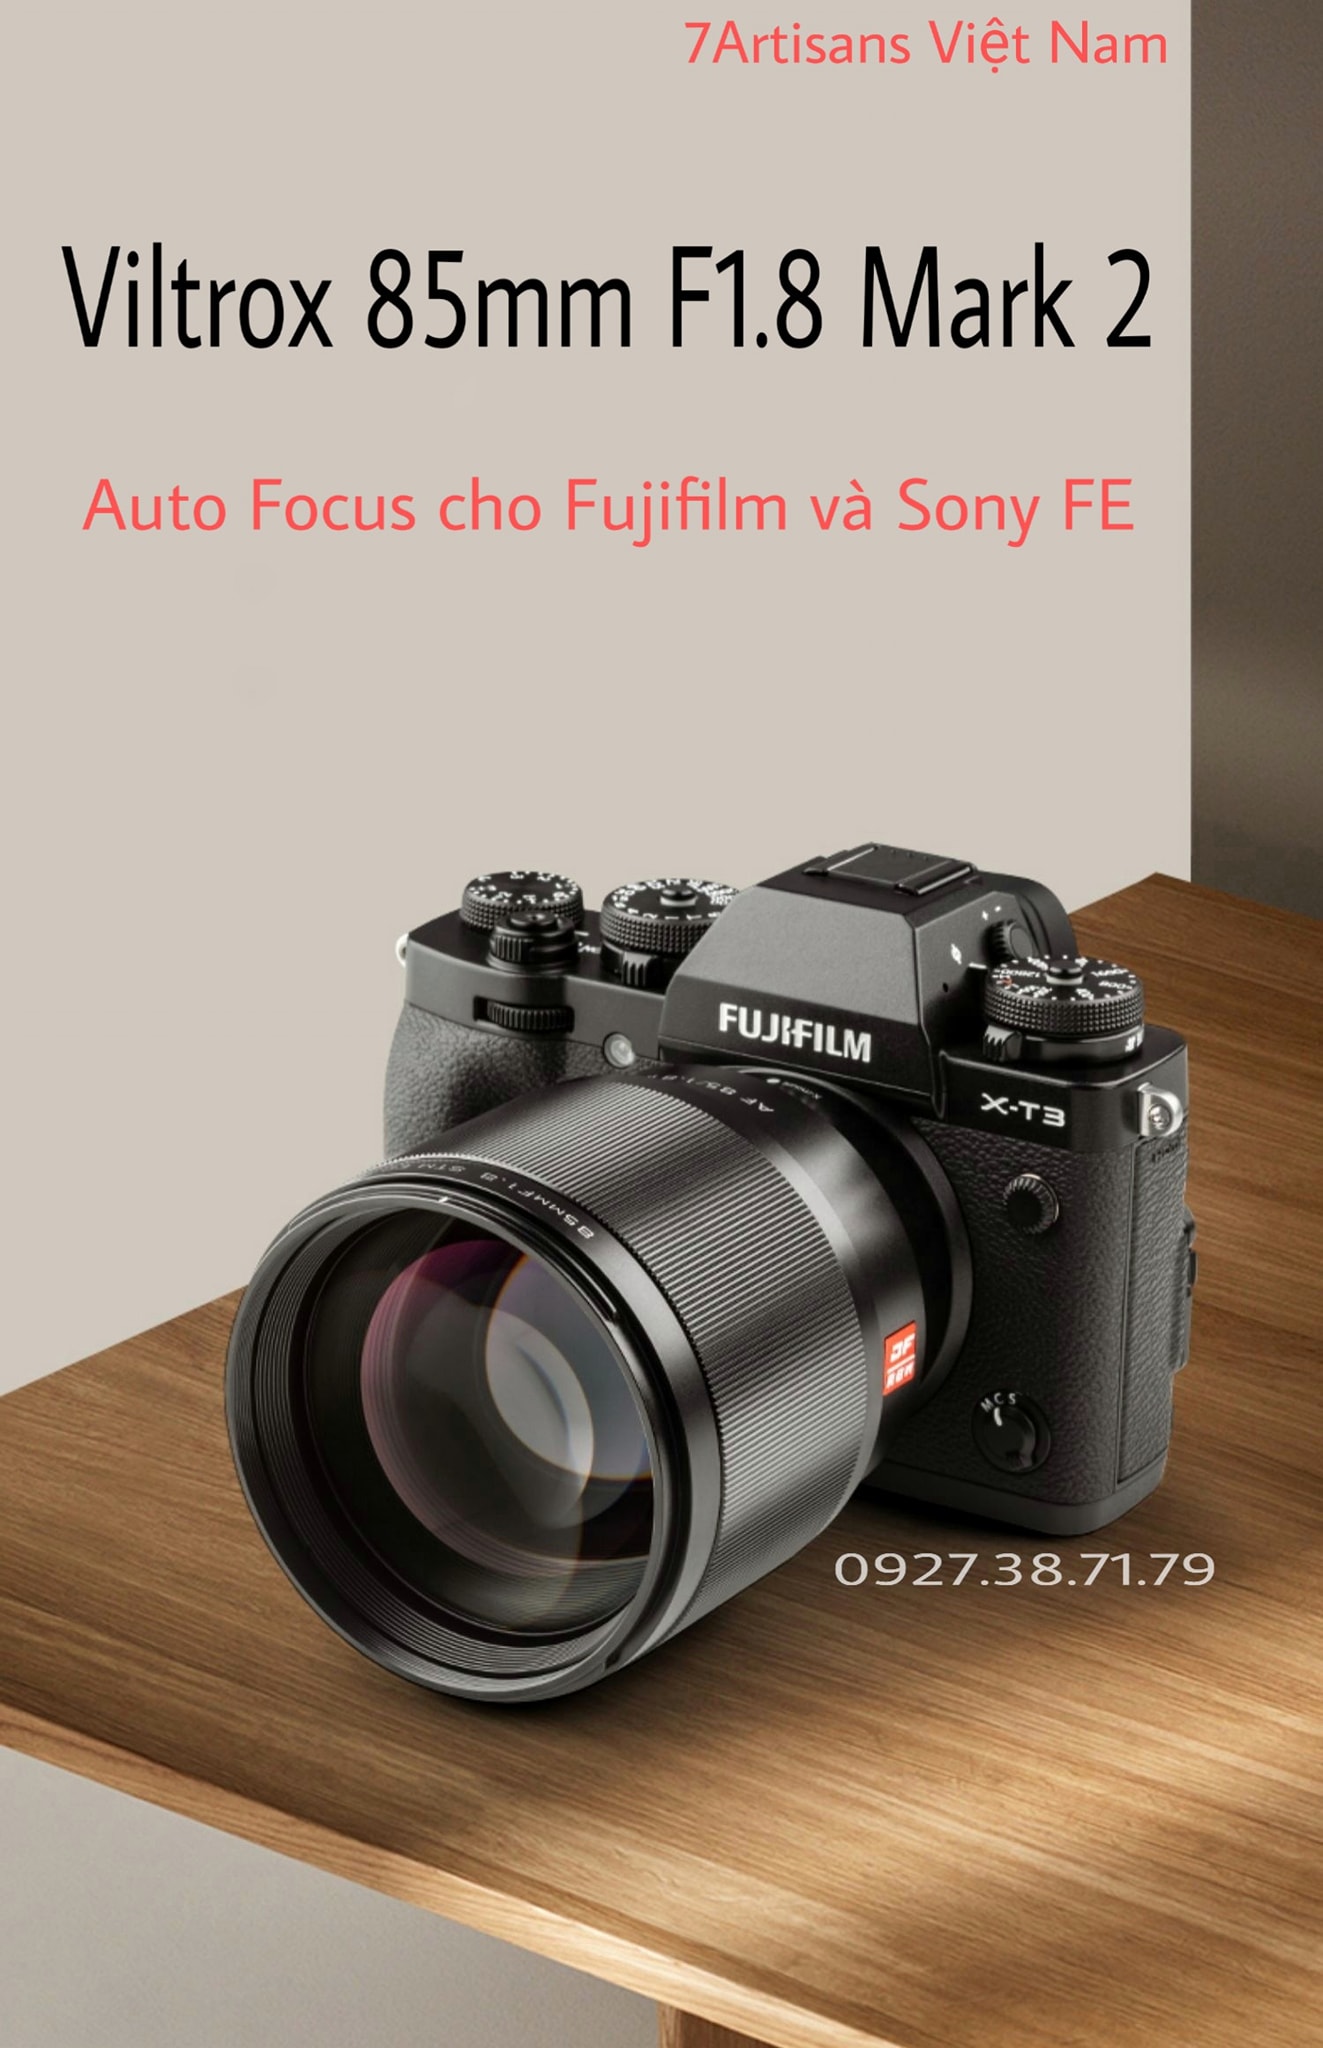 [Trả góp 0%](CÓ SẴN) Ống Kính AF Viltrox 85mm F1.8 II Cho Sony Fujfilm và Nikon Z - Bảo hành...